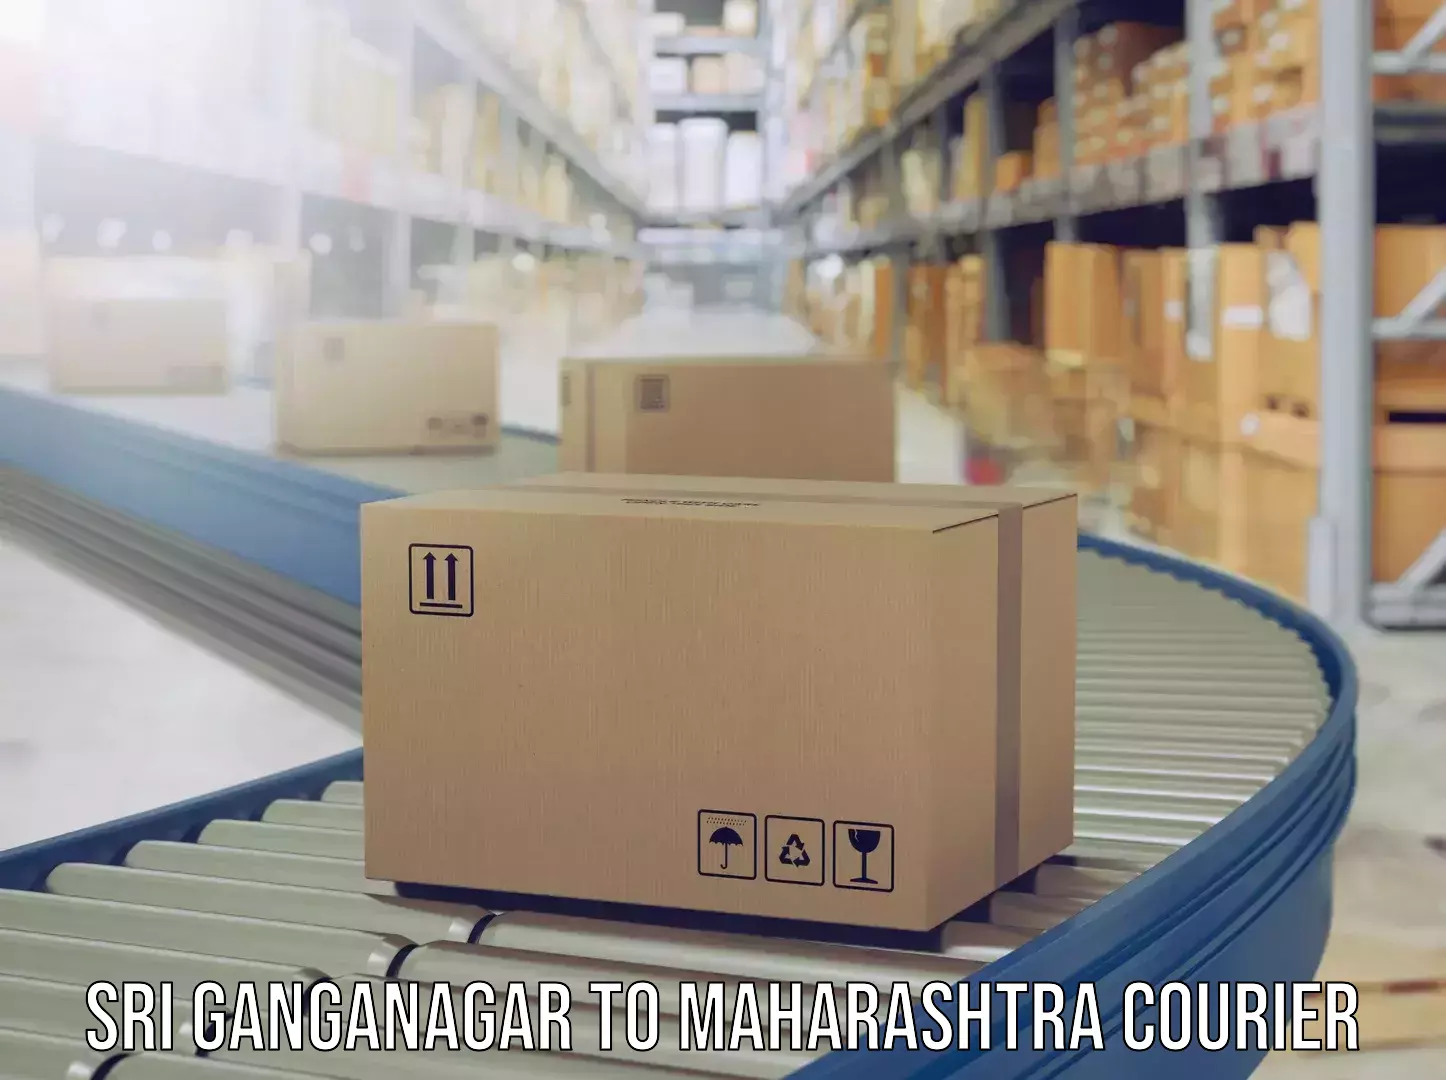 Baggage shipping experts Sri Ganganagar to Ahmednagar